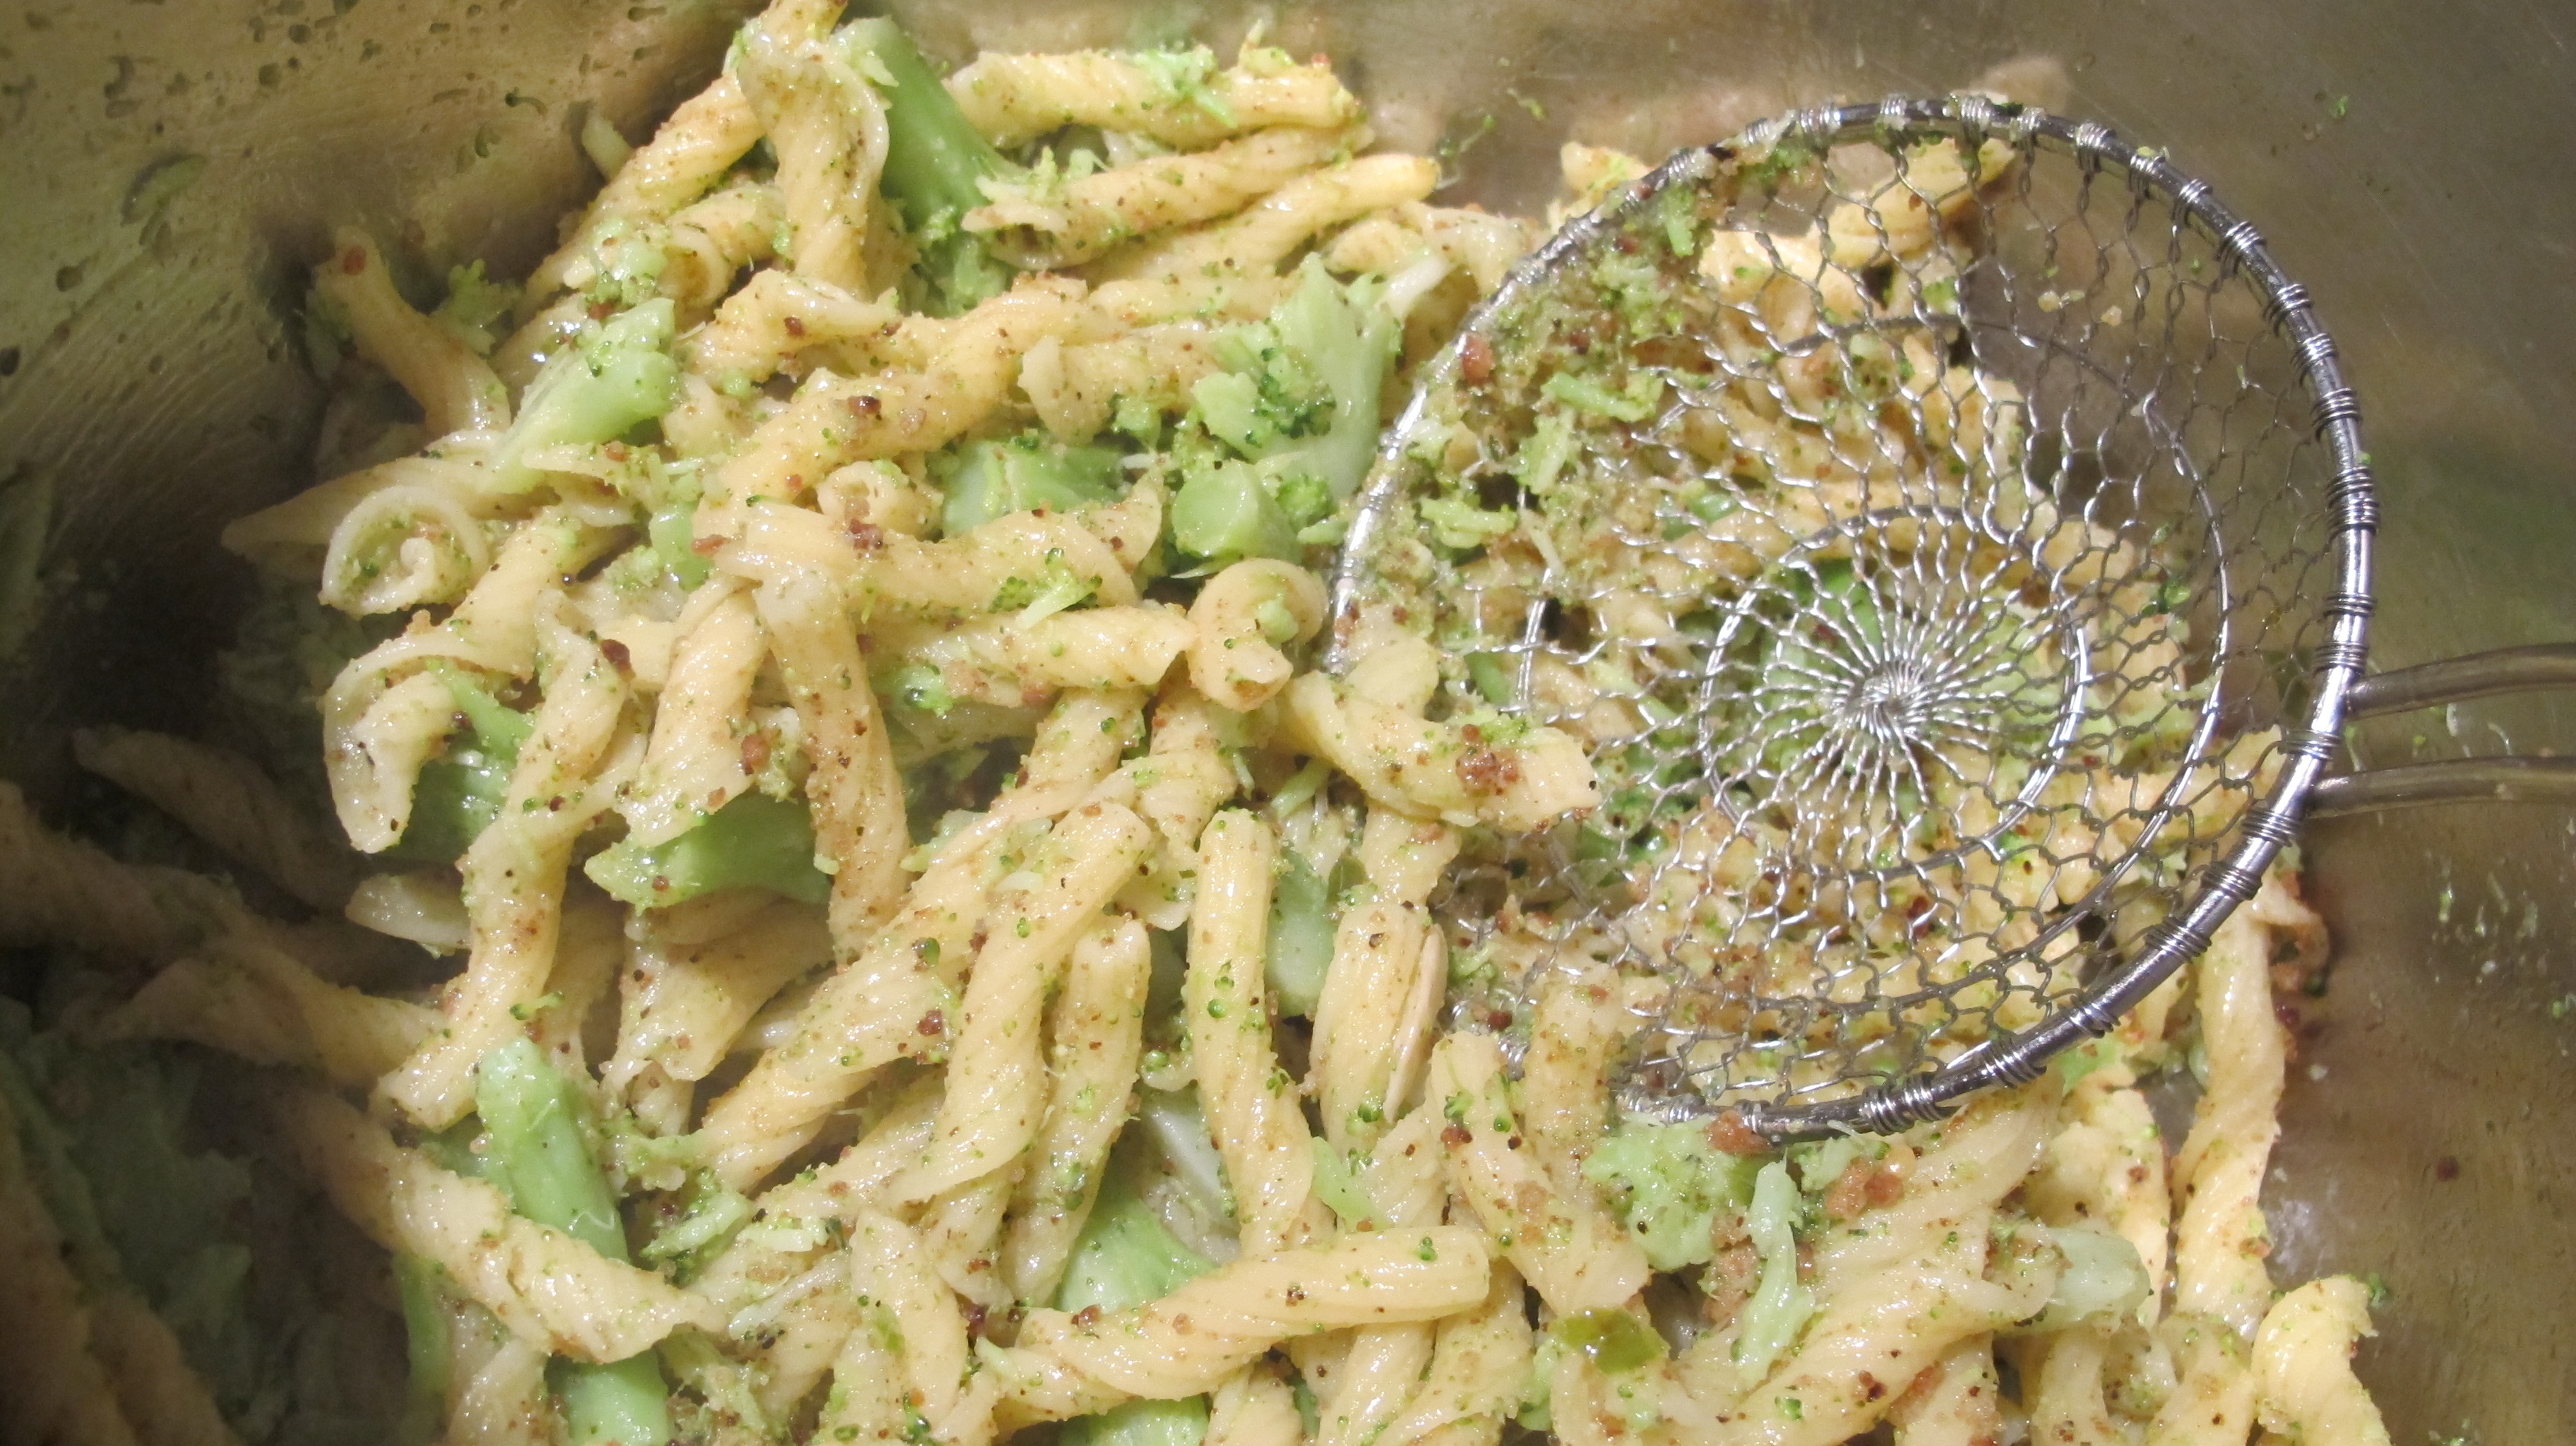 Broccoli and Spicy Bread Crumb Pasta